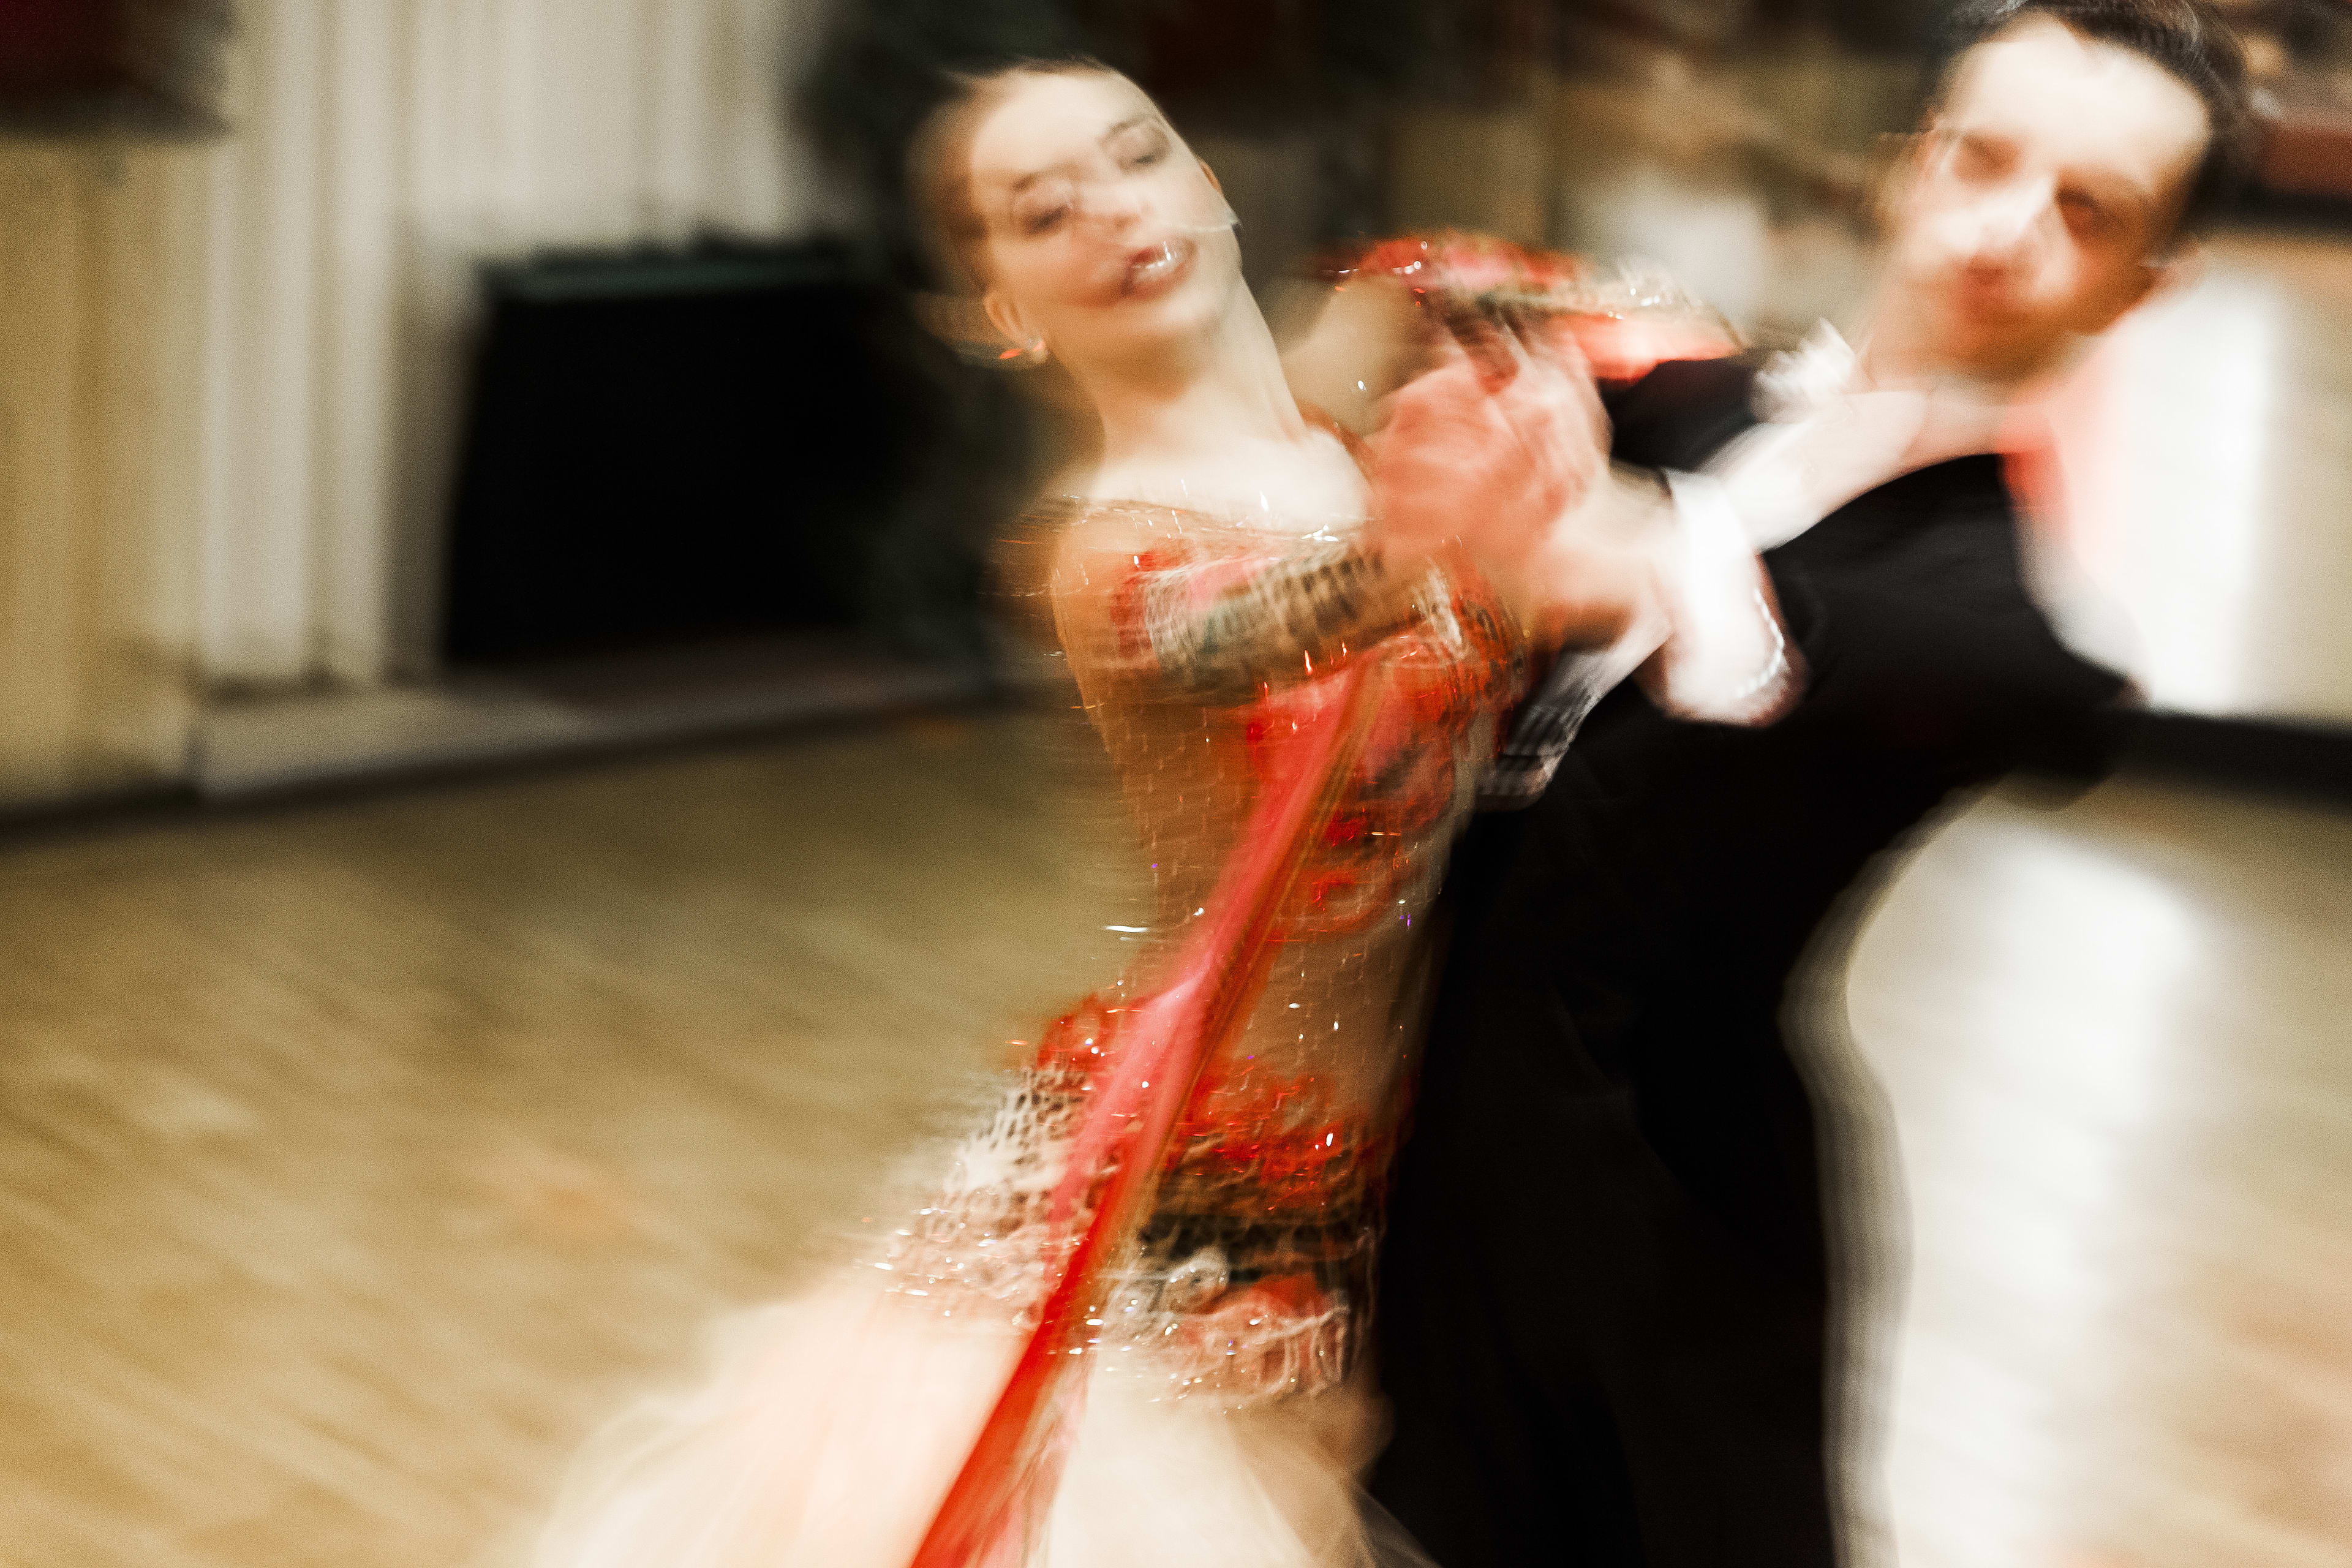 Schokkende cijfers in uitgelekt rapport: 4 op 10 dansers maakt grensoverschrijdend gedrag mee